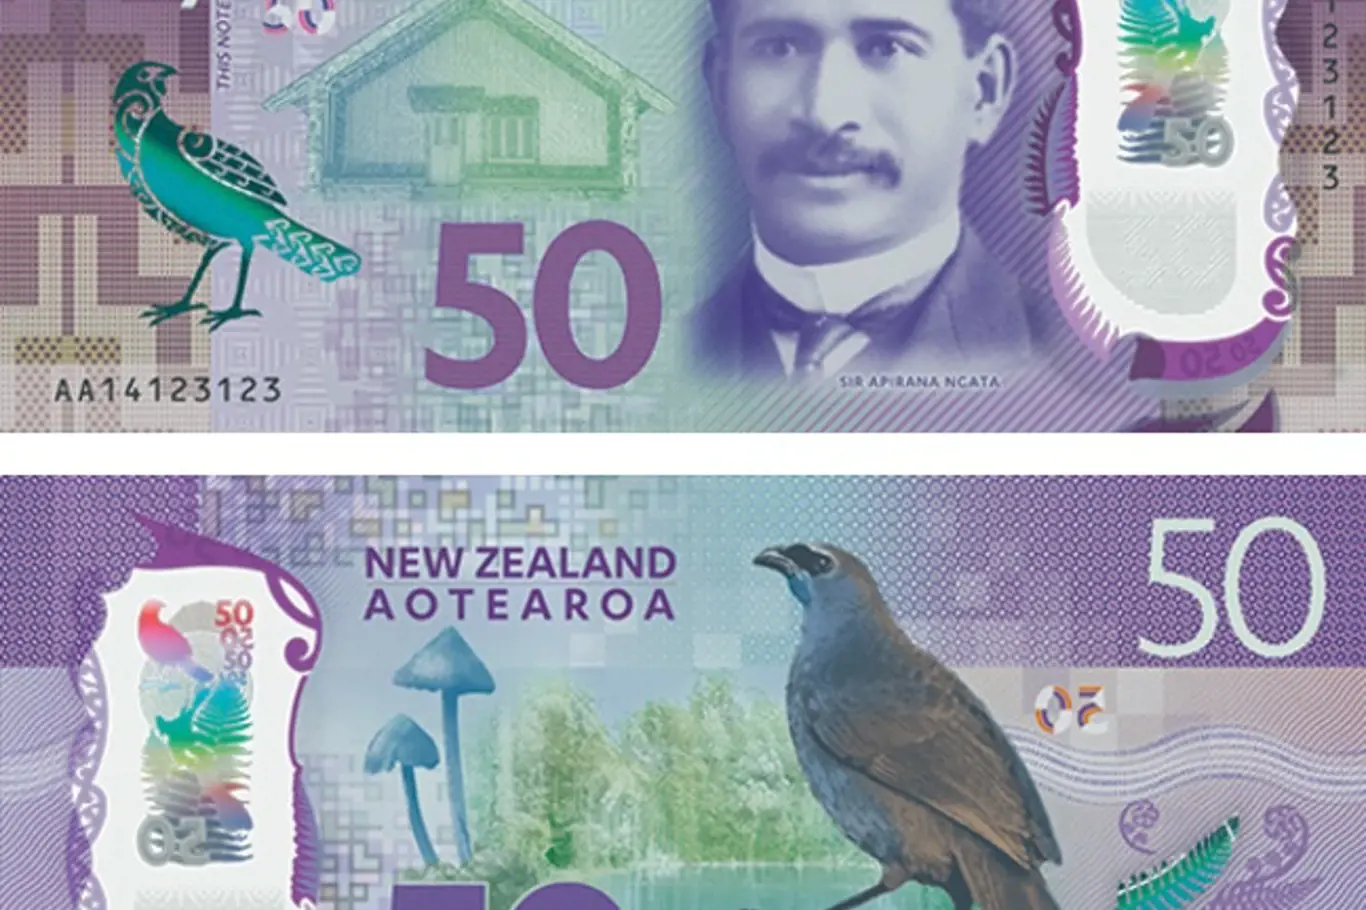 Nominovaná bankovka za rok 2016. Padesát novozélandských dolarů s průhledným okénkem.